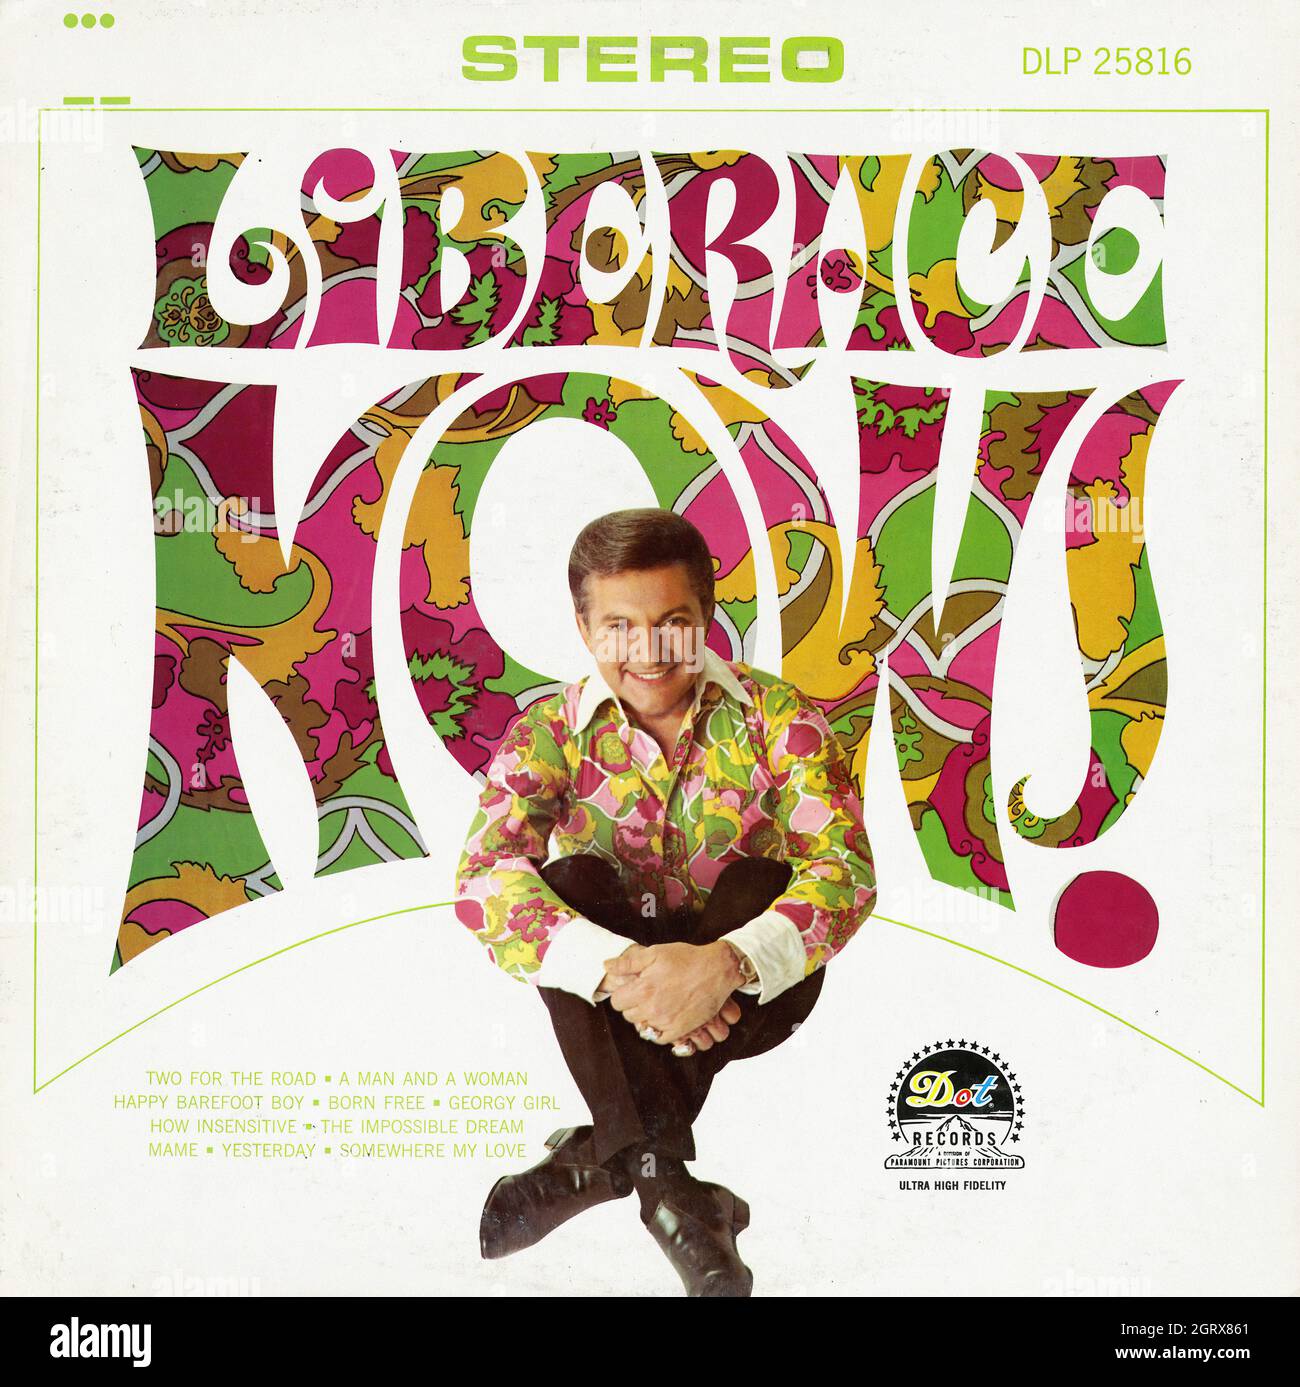 Liberace Now! -  Vintage American Comedy Vinyl Album Stock Photo